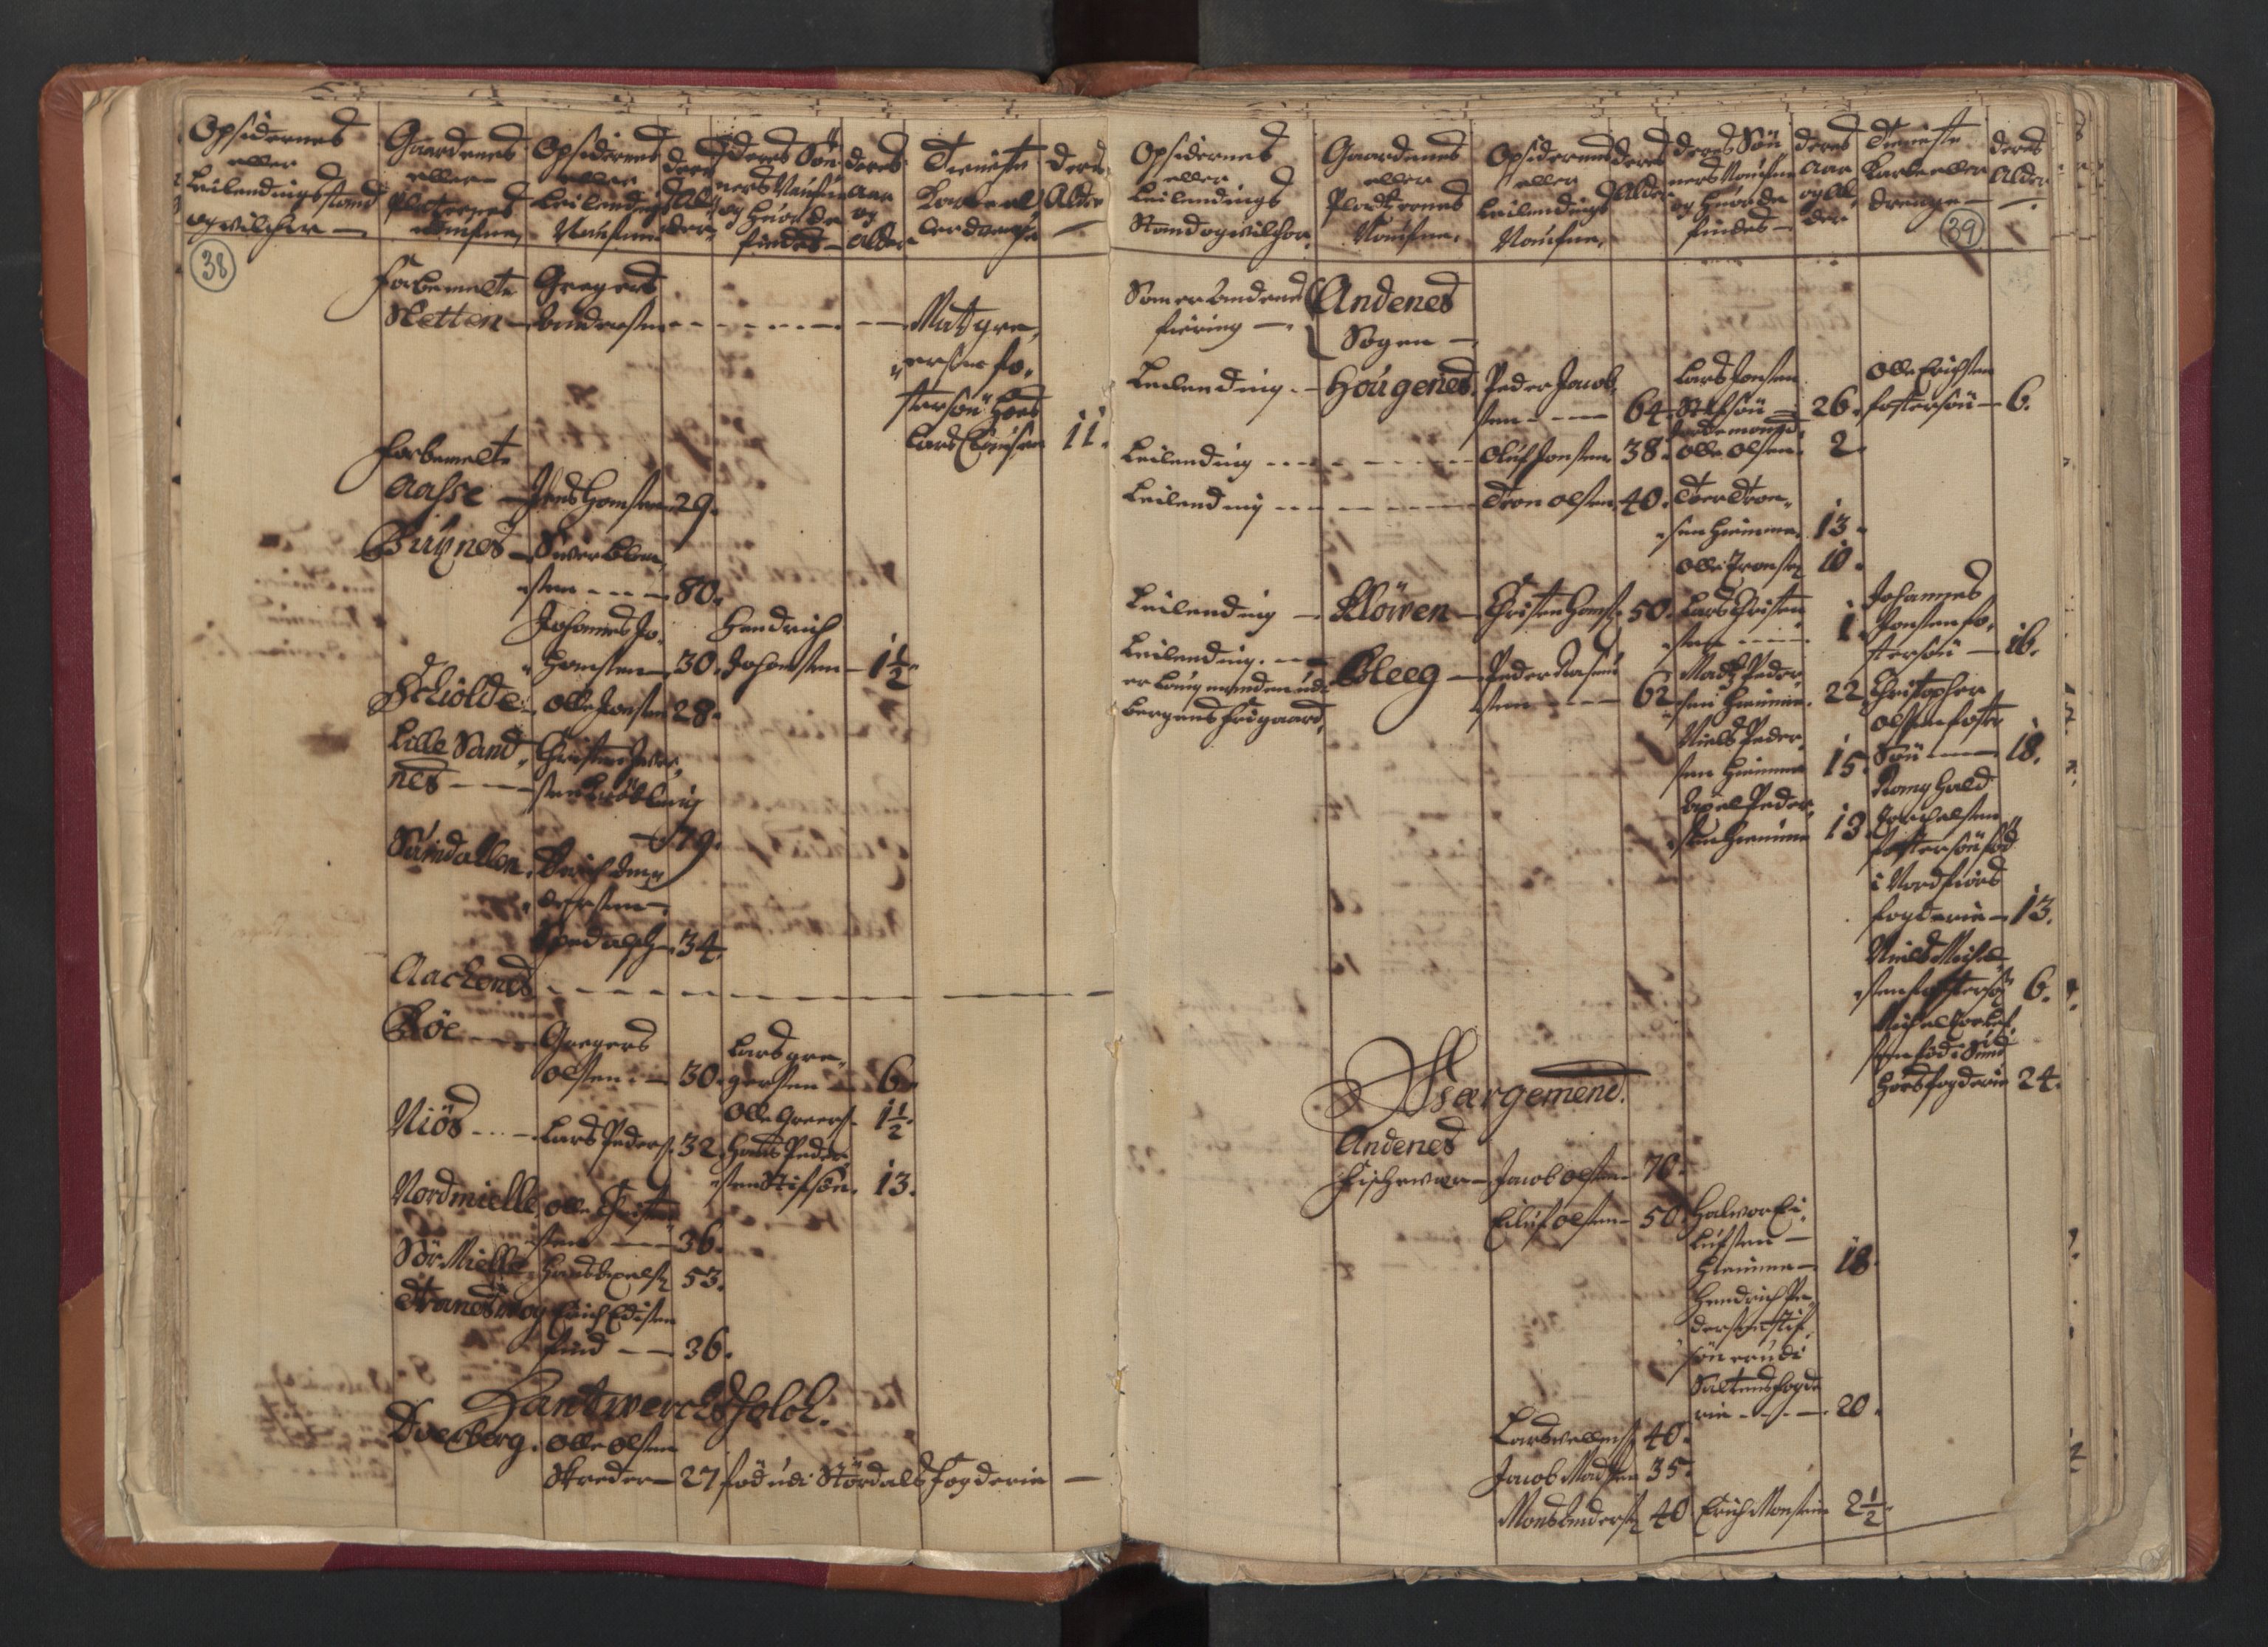 RA, Census (manntall) 1701, no. 18: Vesterålen, Andenes and Lofoten fogderi, 1701, p. 38-39